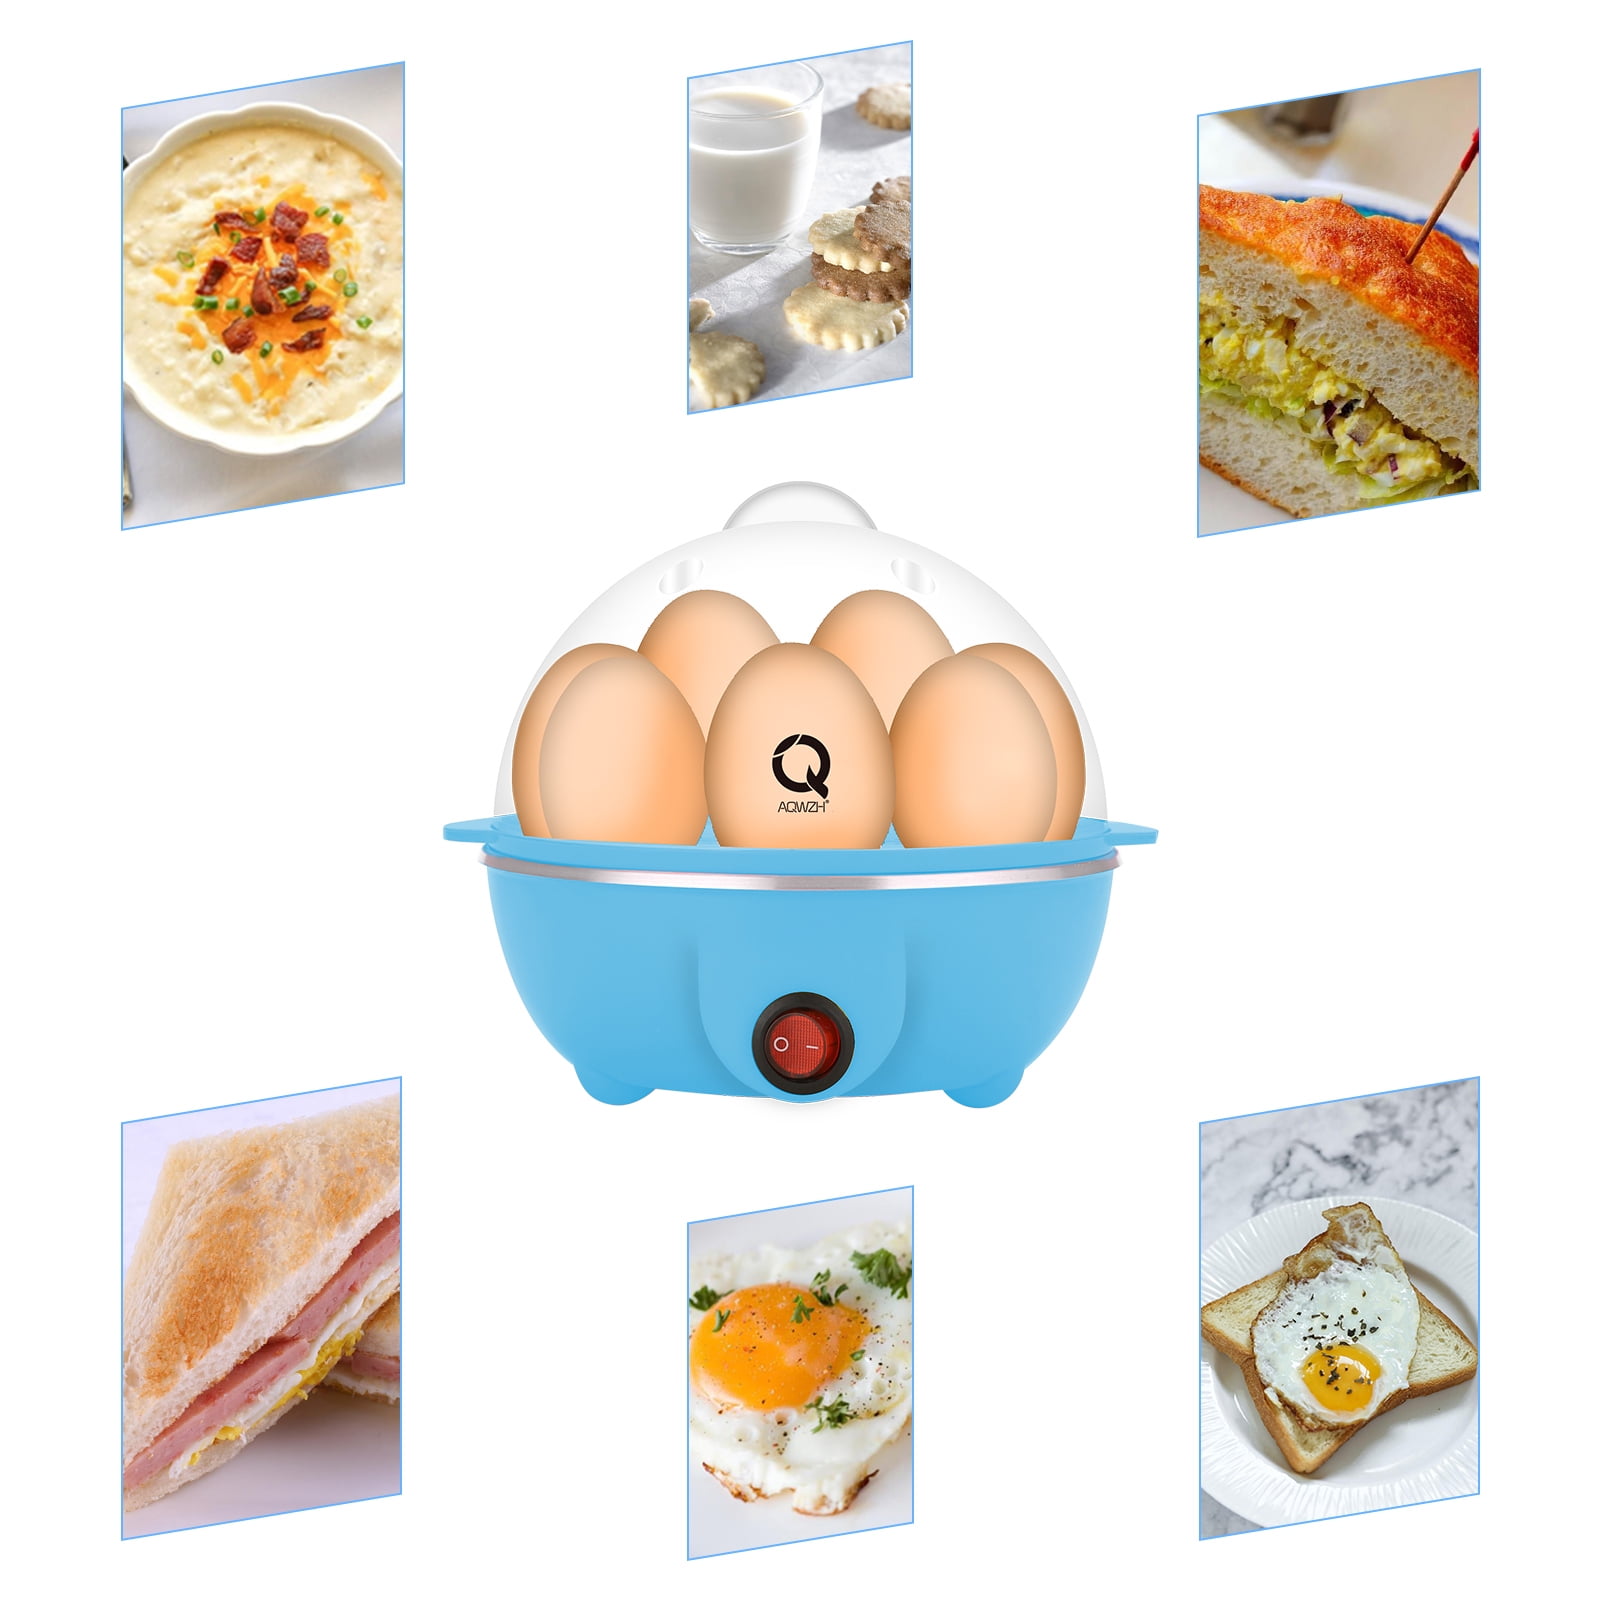 Mojoco Rapid Egg Cooker - Mini Egg Cooker for Steamed, Hard Boiled